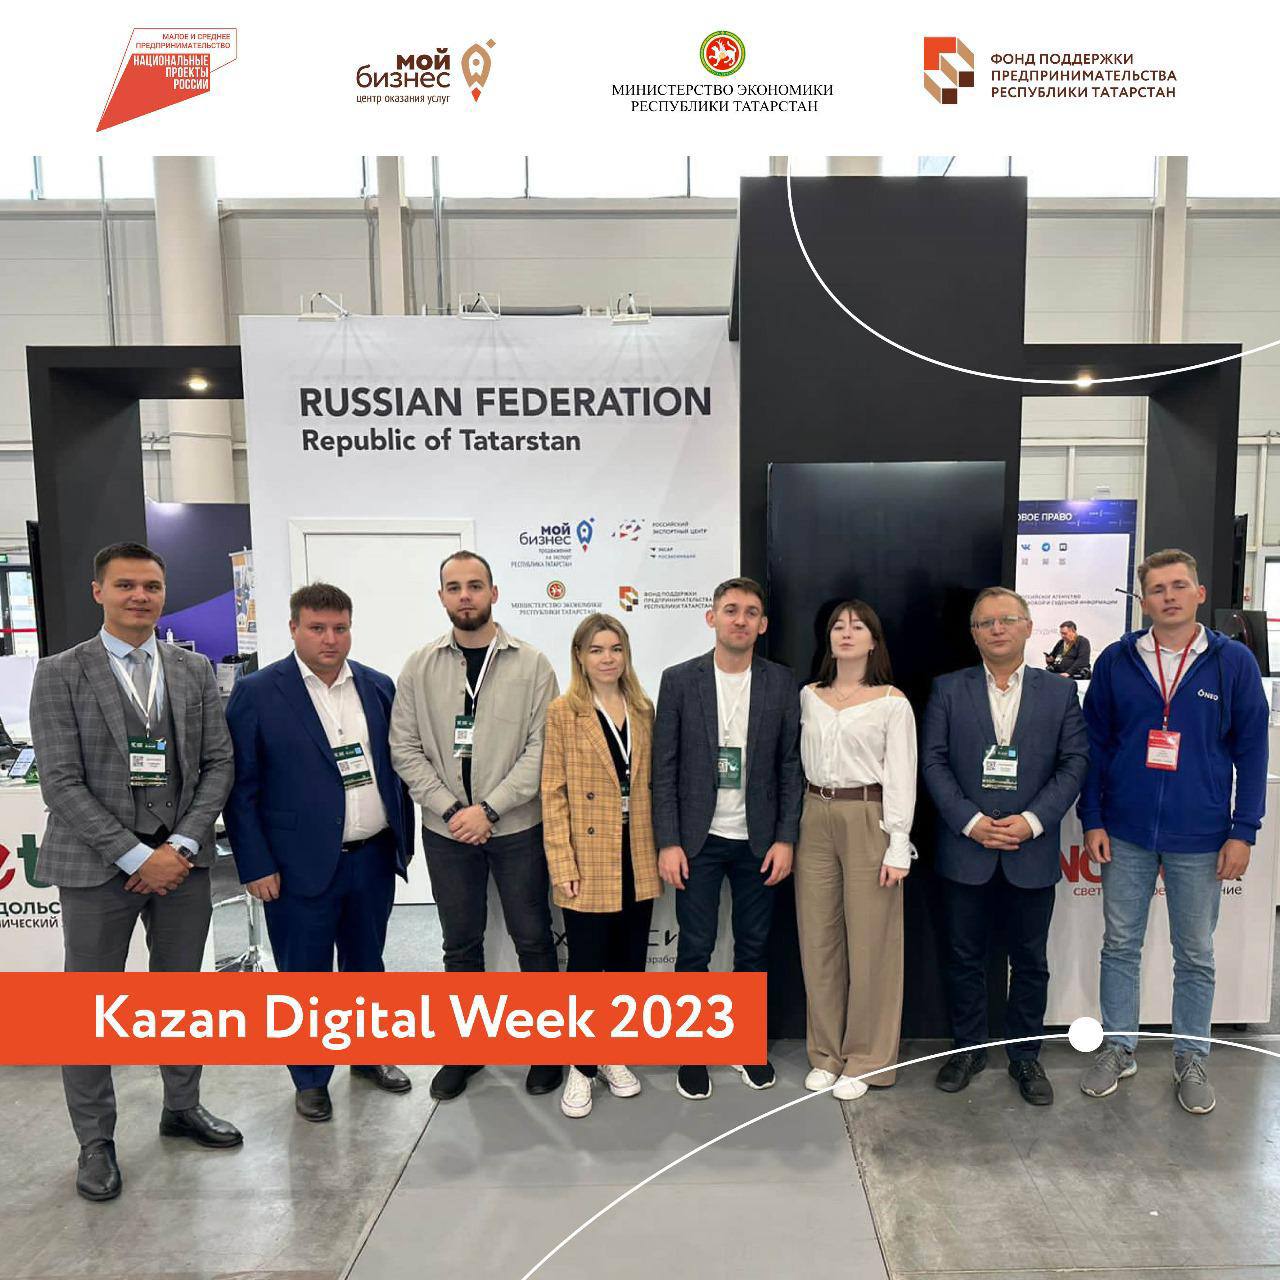 Предприниматели Татарстана приняли участие в международной выставке, посвящённой цифровым технологиям в сфере здравоохранения и цифровой безопасности в рамках форума «Kazan Digital Week 2023».